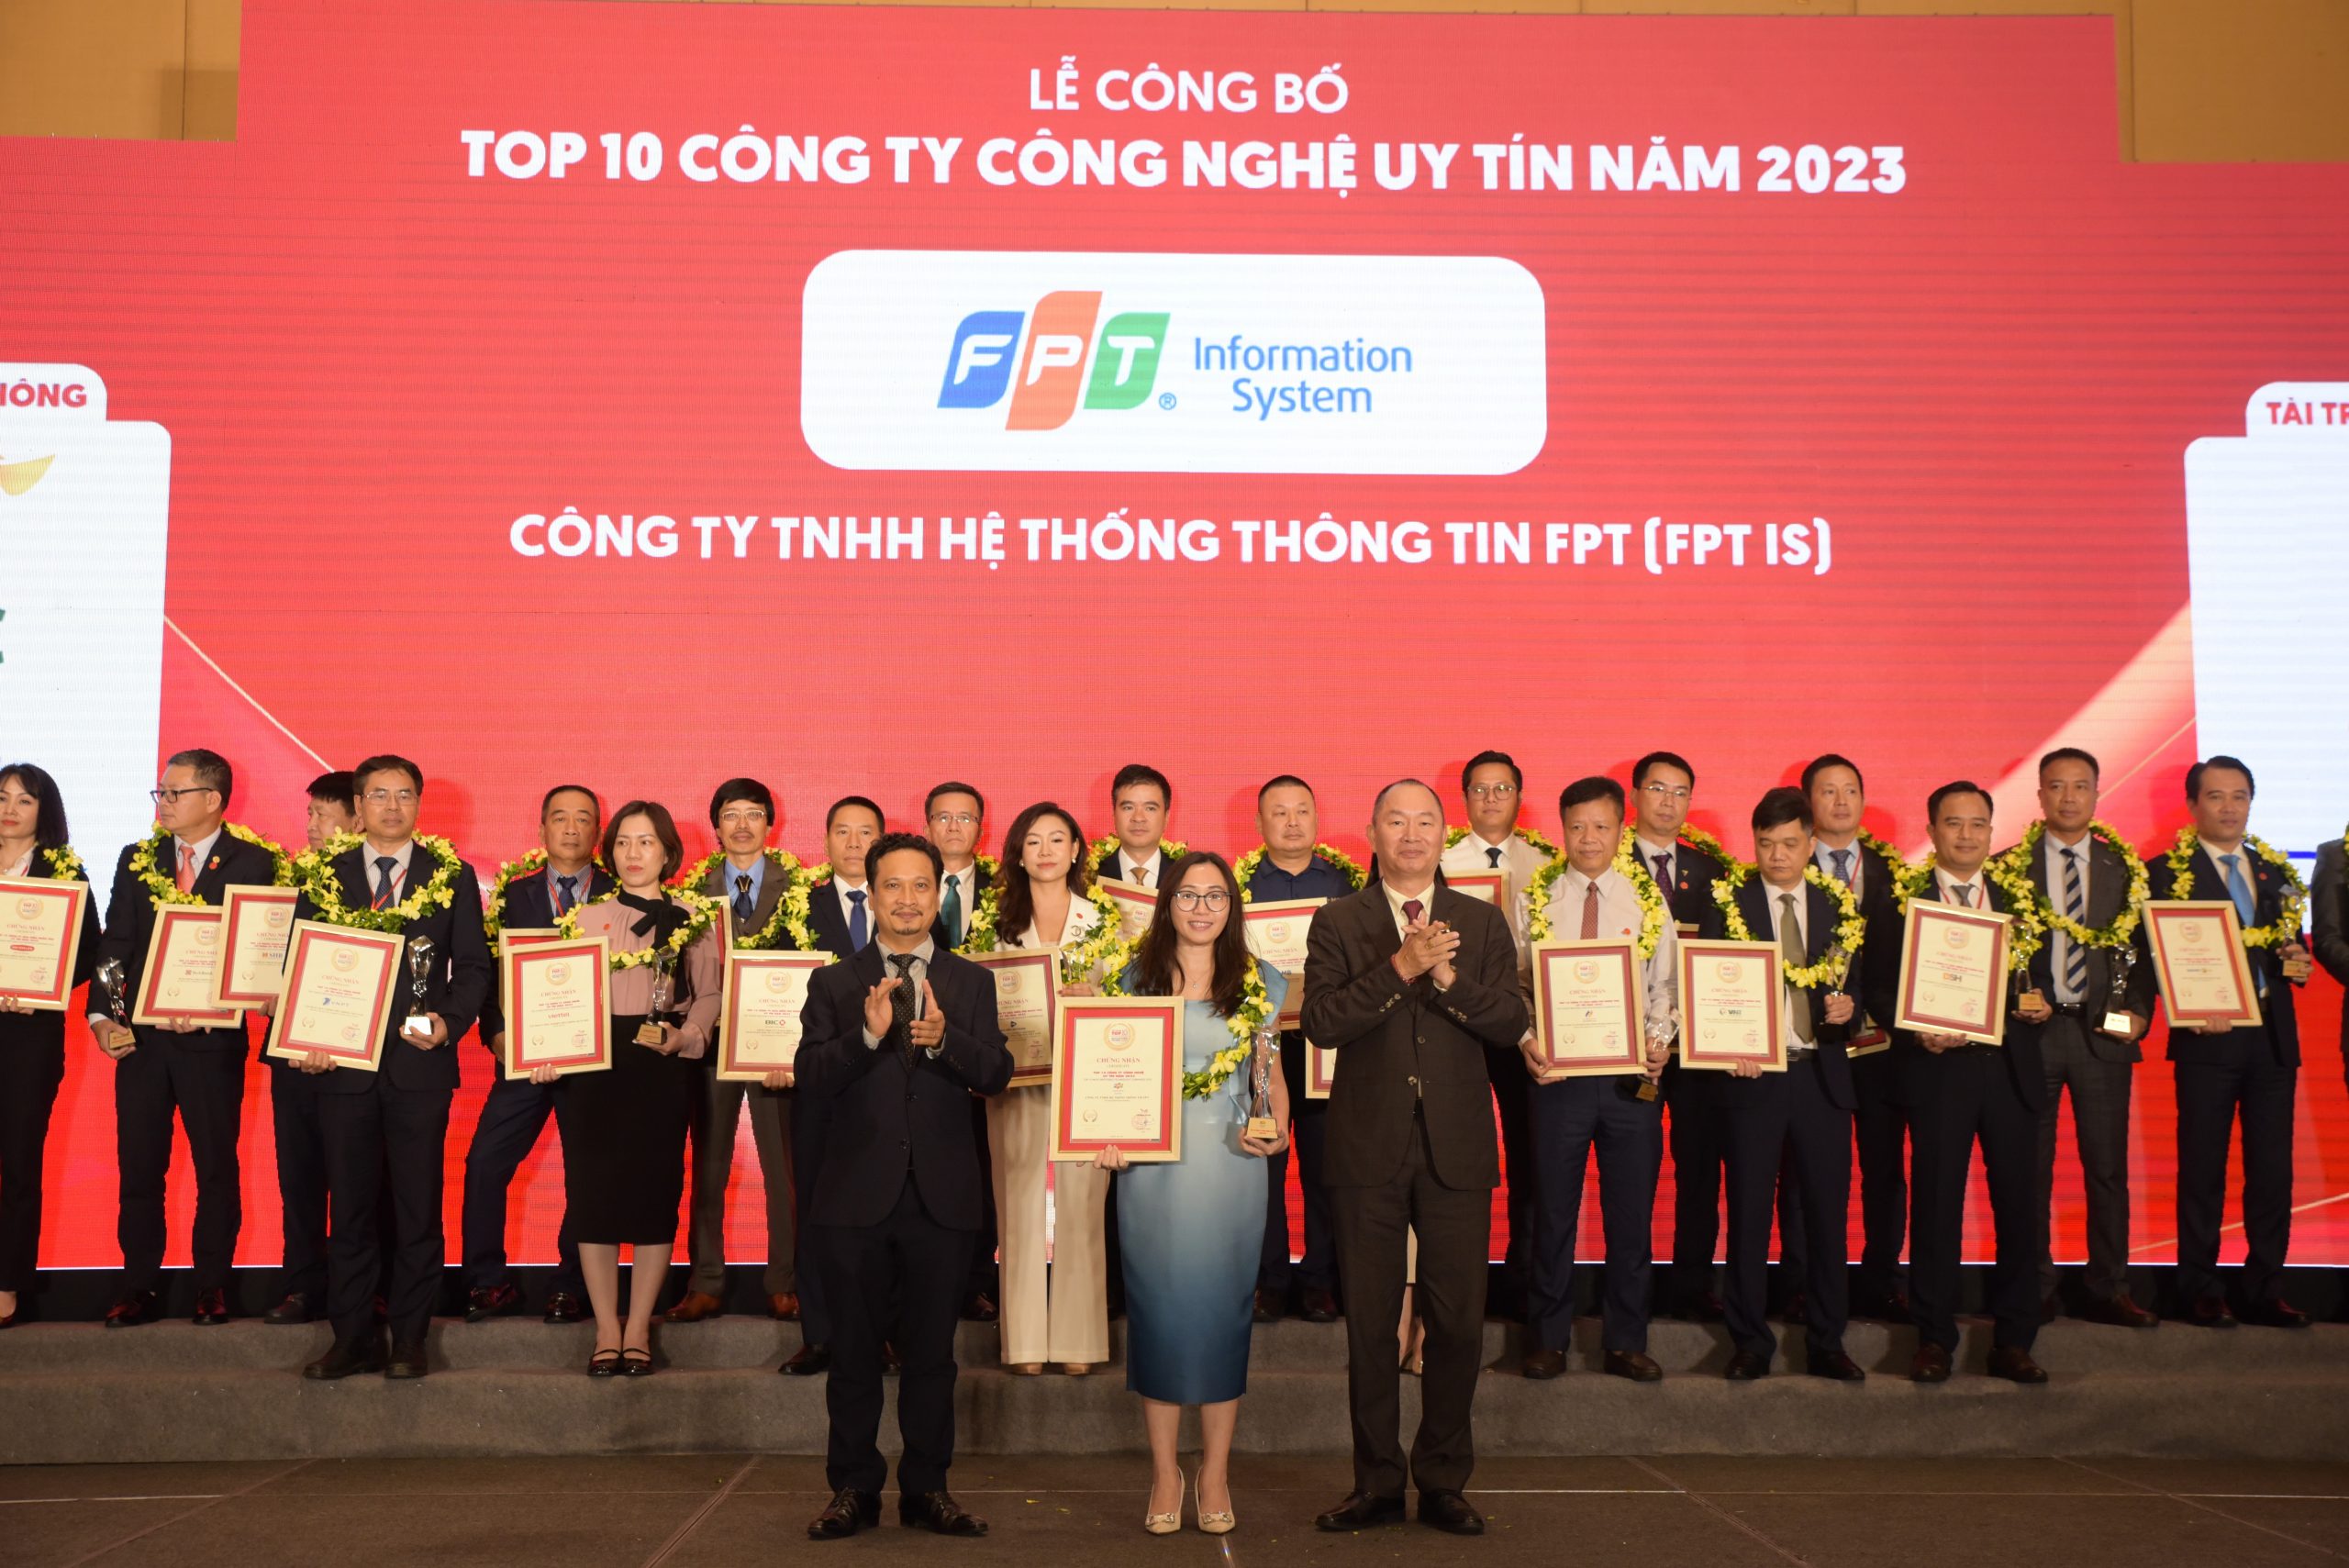 Top 10 công ty Công nghệ Uy tín Việt Nam 2023 (Hạng mục: Top 10 Công ty Công nghệ cung cấp Dịch vụ, giải pháp Phần mềm & Tích hợp hệ thống uy tín năm 2023)